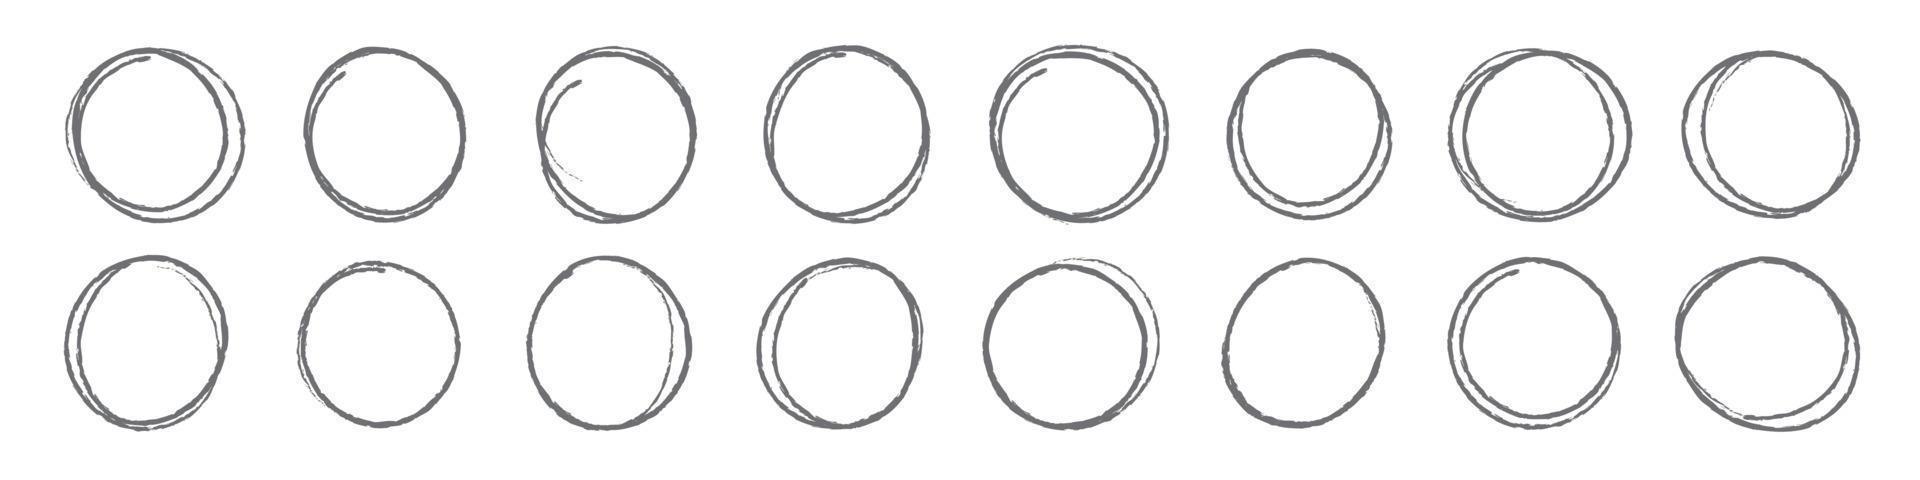 ensemble de cadre de croquis de cercles dessinés à la main, ovales de stylo-feutre. doodle cadre circulaire éléments isolés illustration vectorielle vecteur